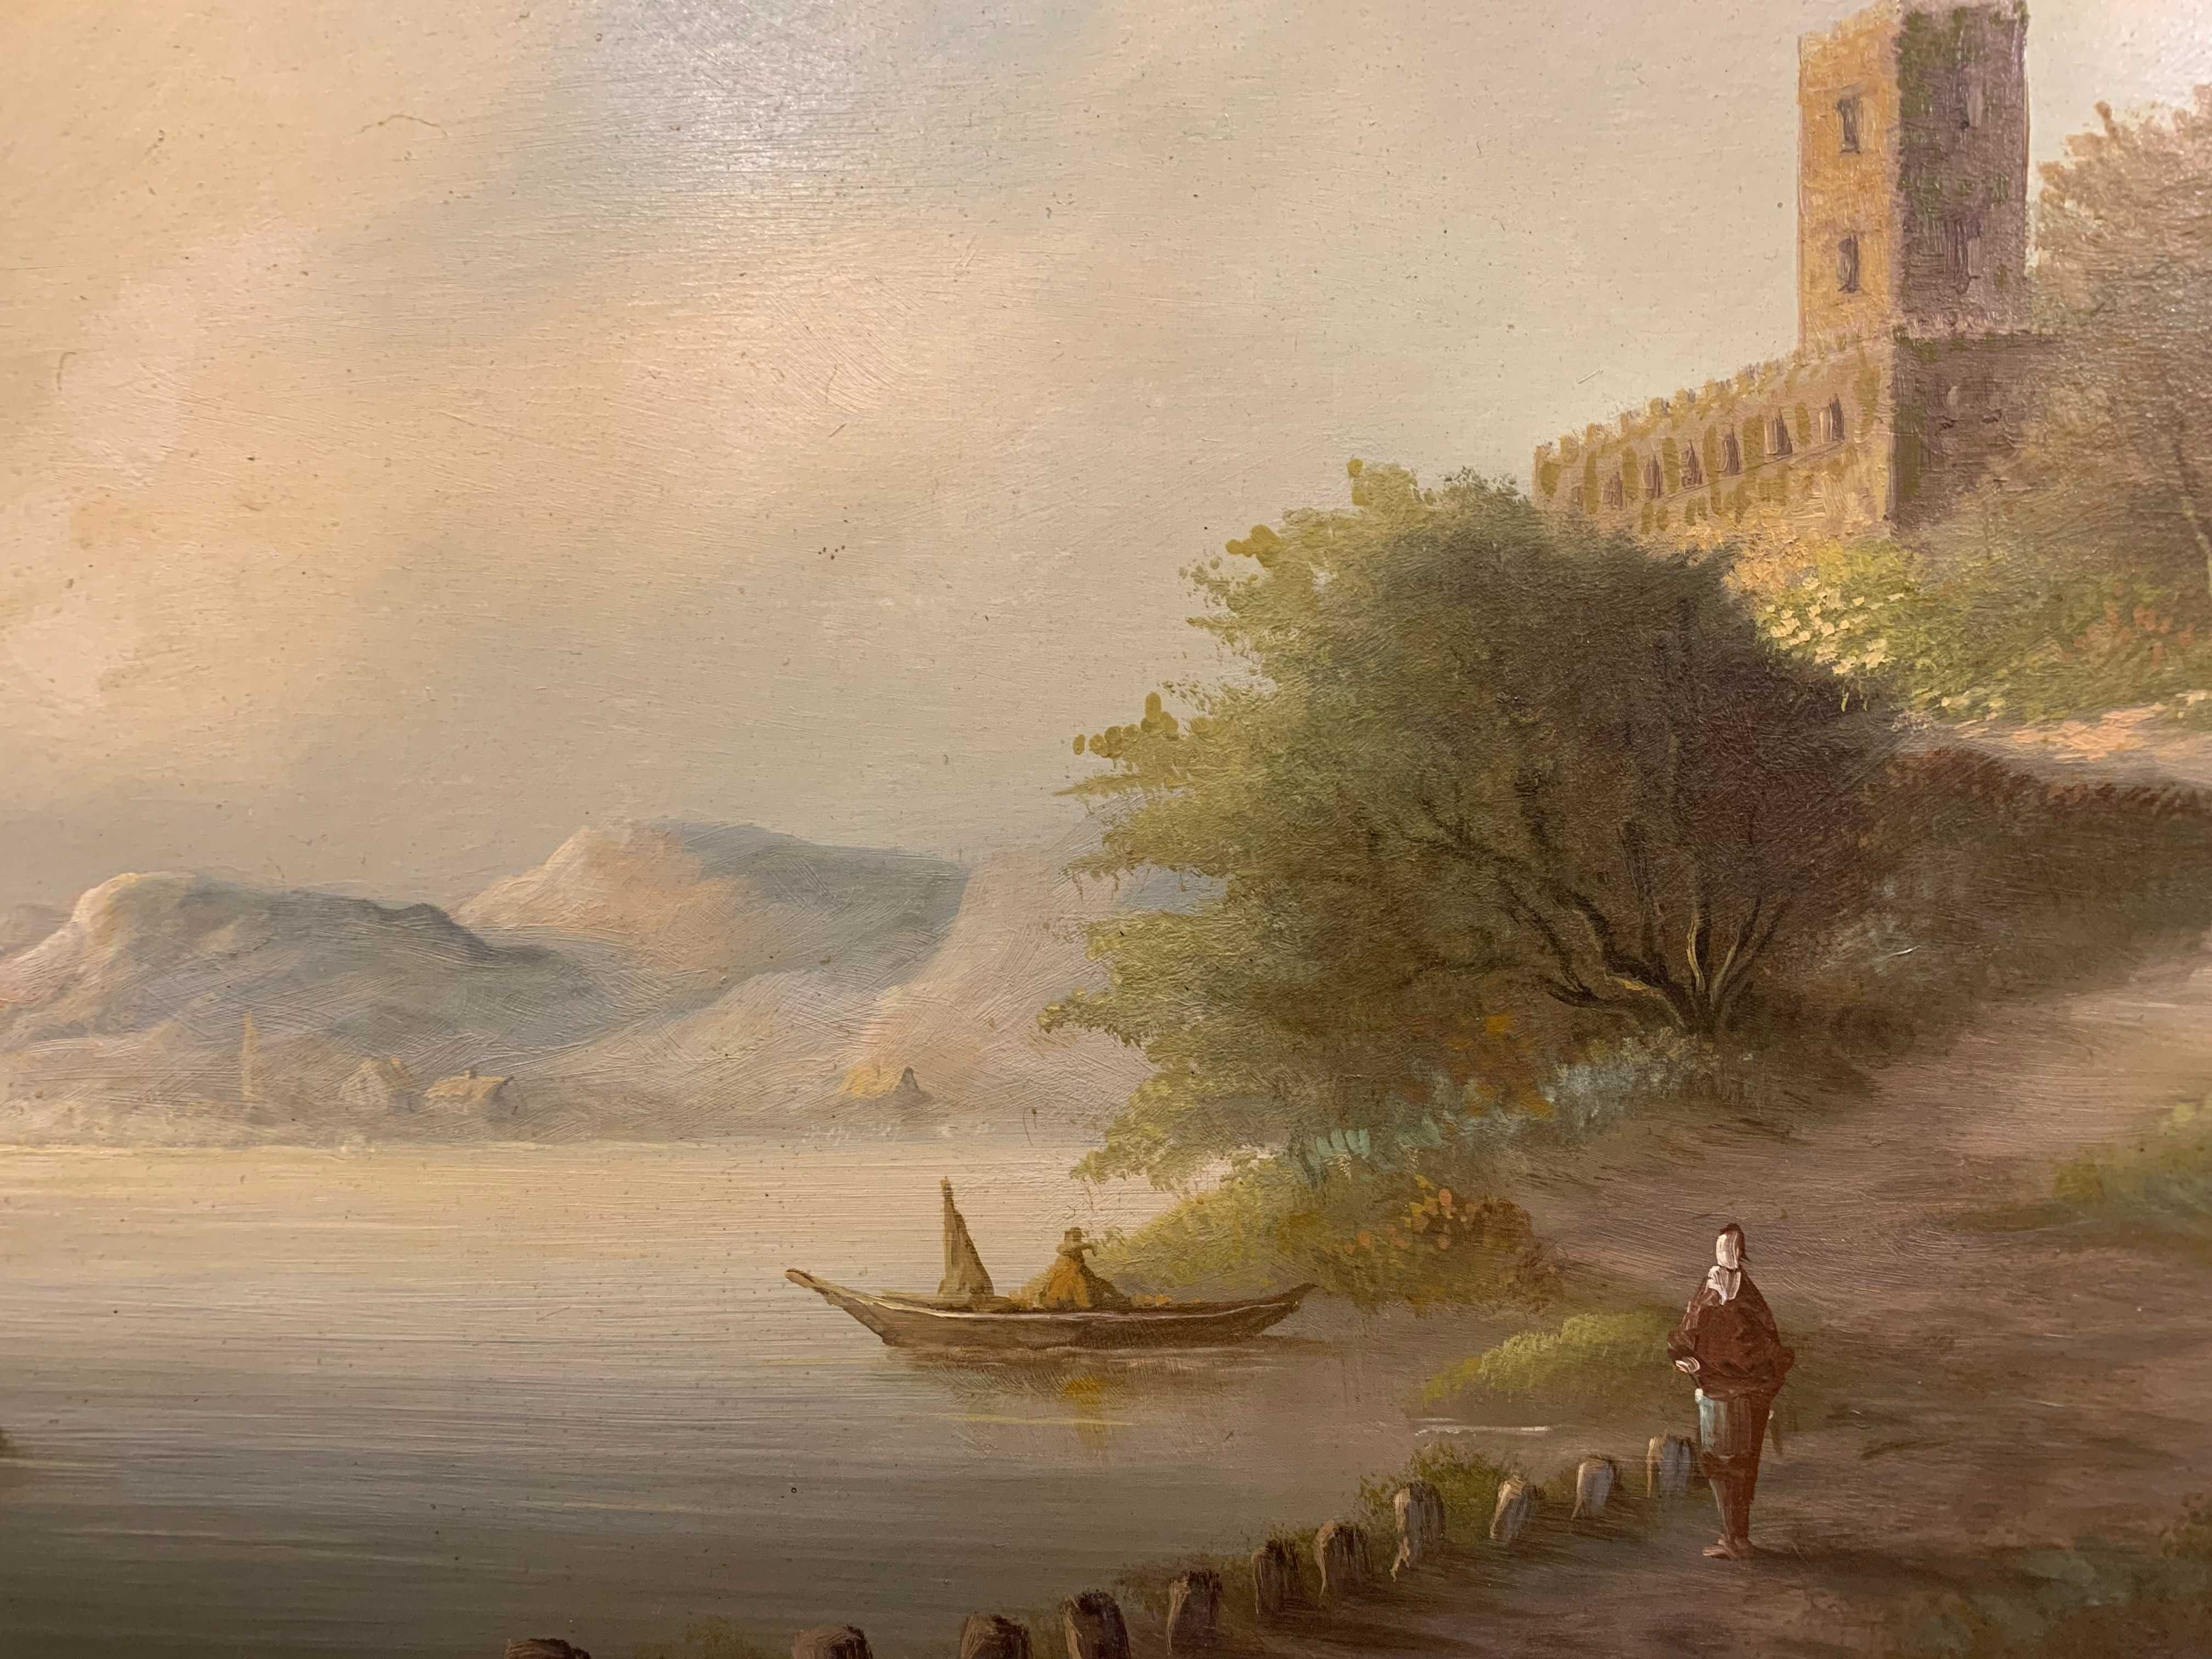 Картина старовинна "Дорога біля берега",олія на дошці.Розм.67*83,5см